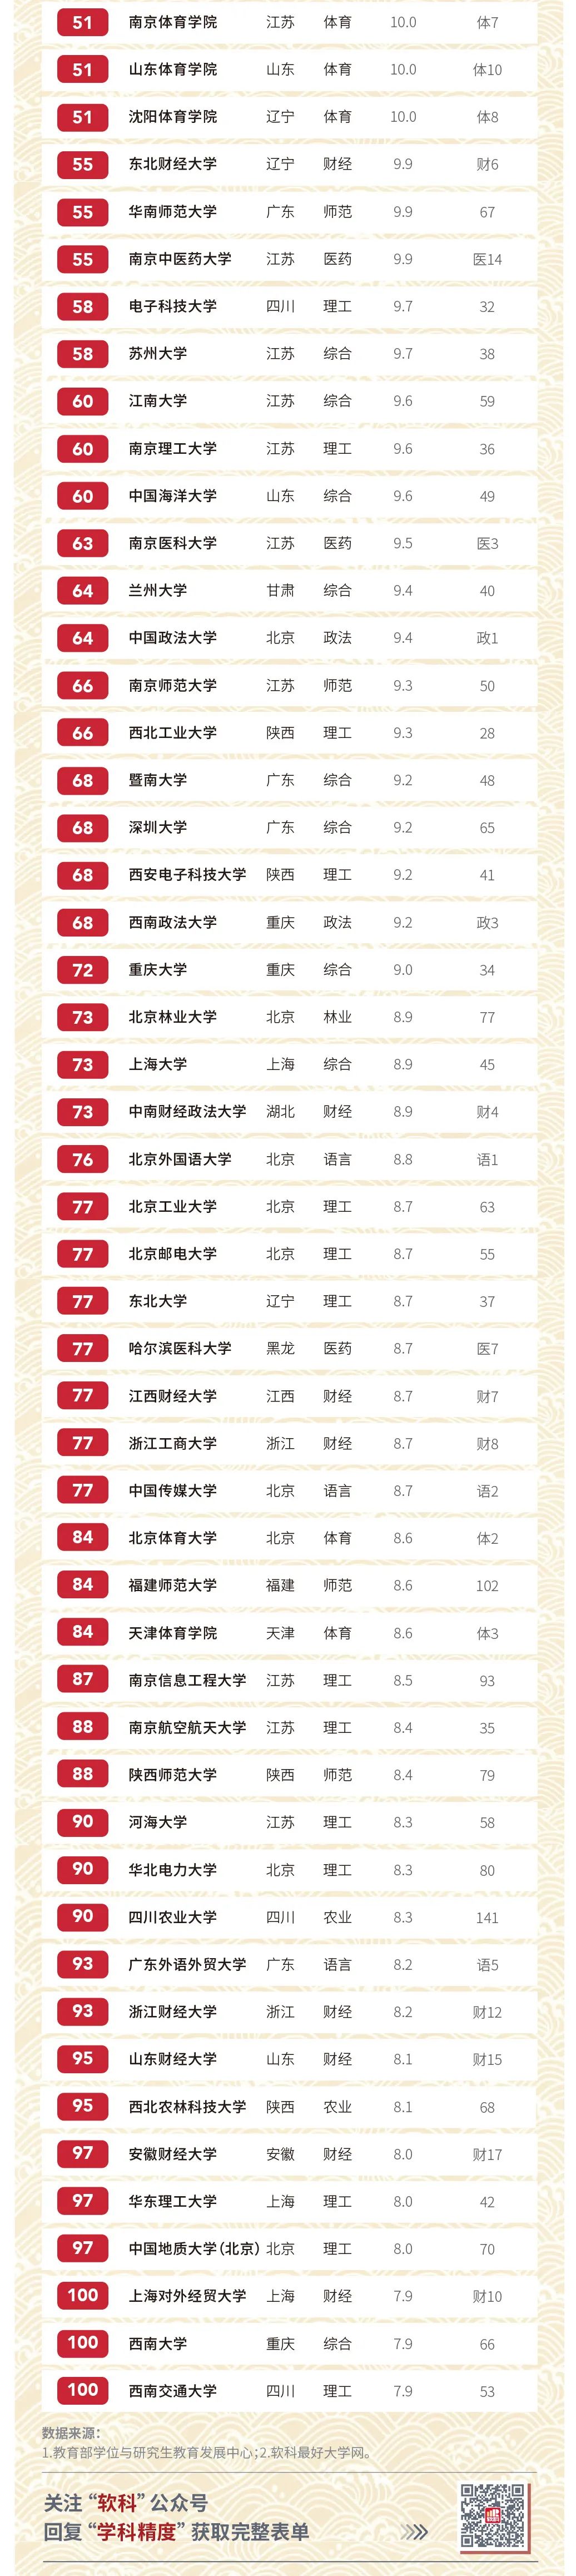 2020世界大学排名软_2020中国大学排名发布!复旦排名第六!快来看看你的大